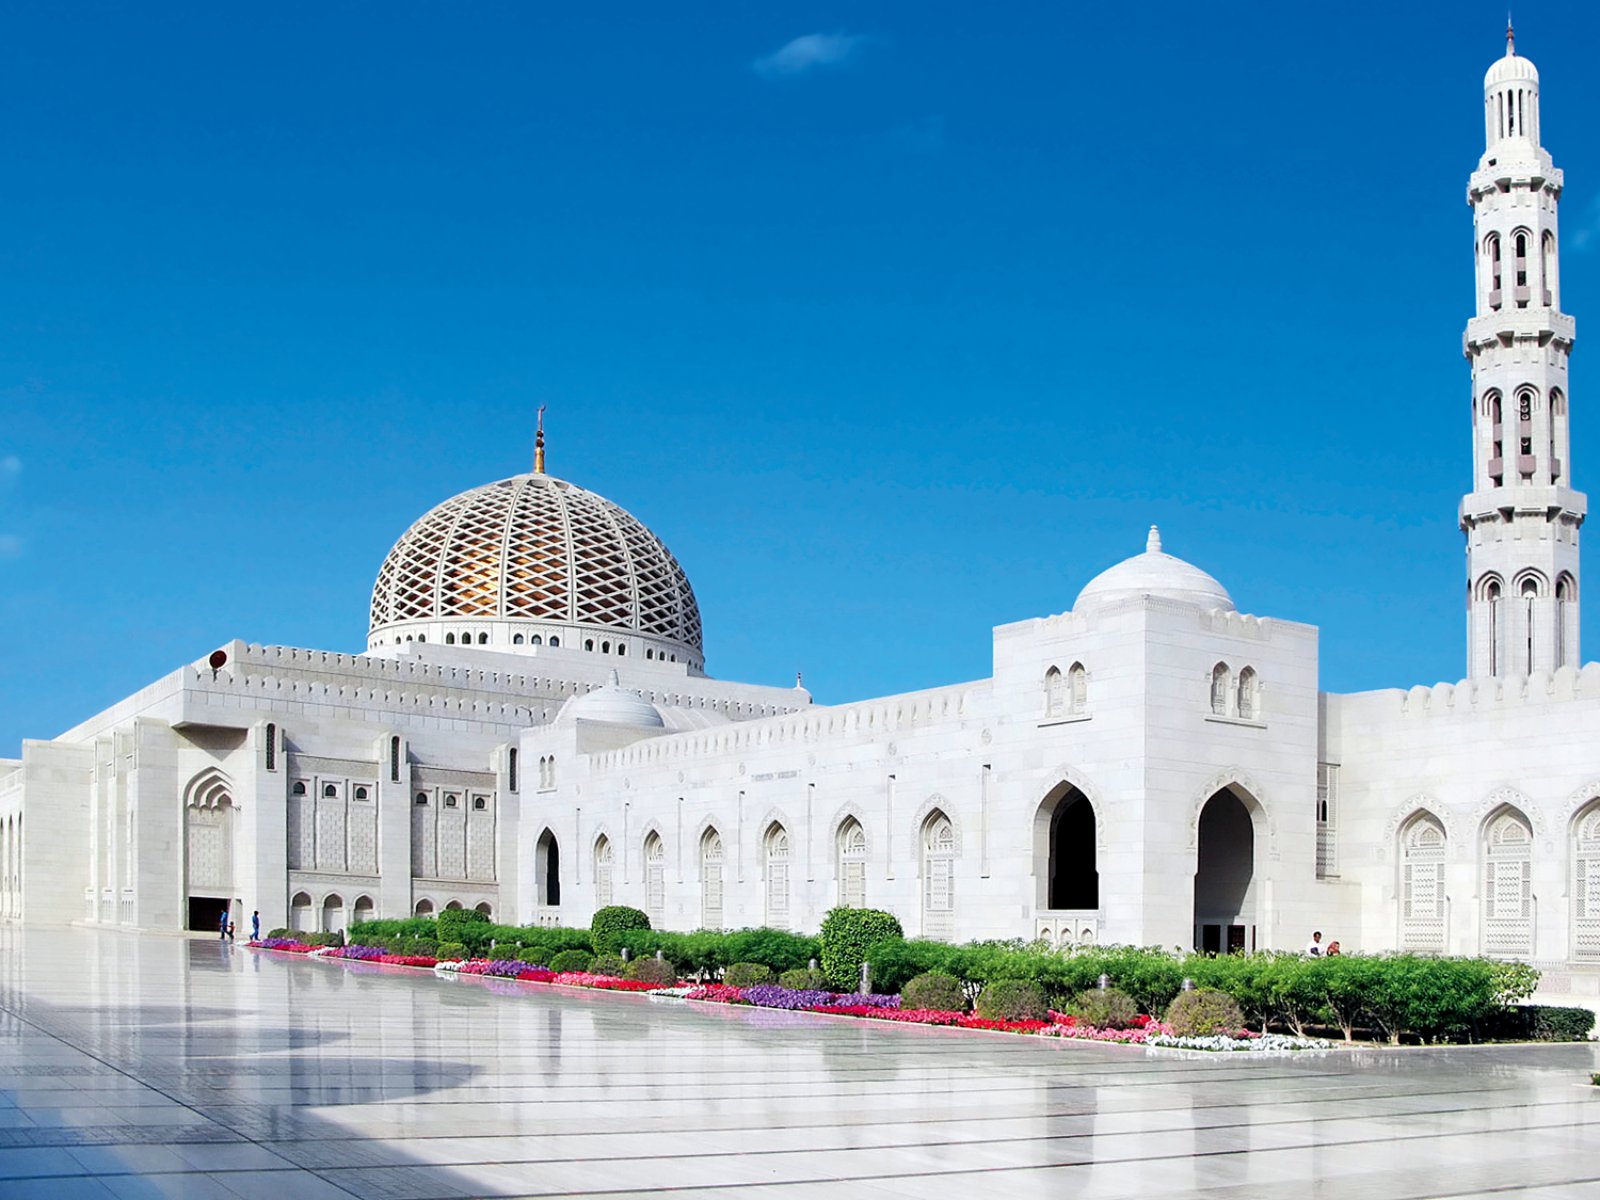 Incontro Con L'Oman - Muscat, Grande Moschea Del Sultano Qaboos